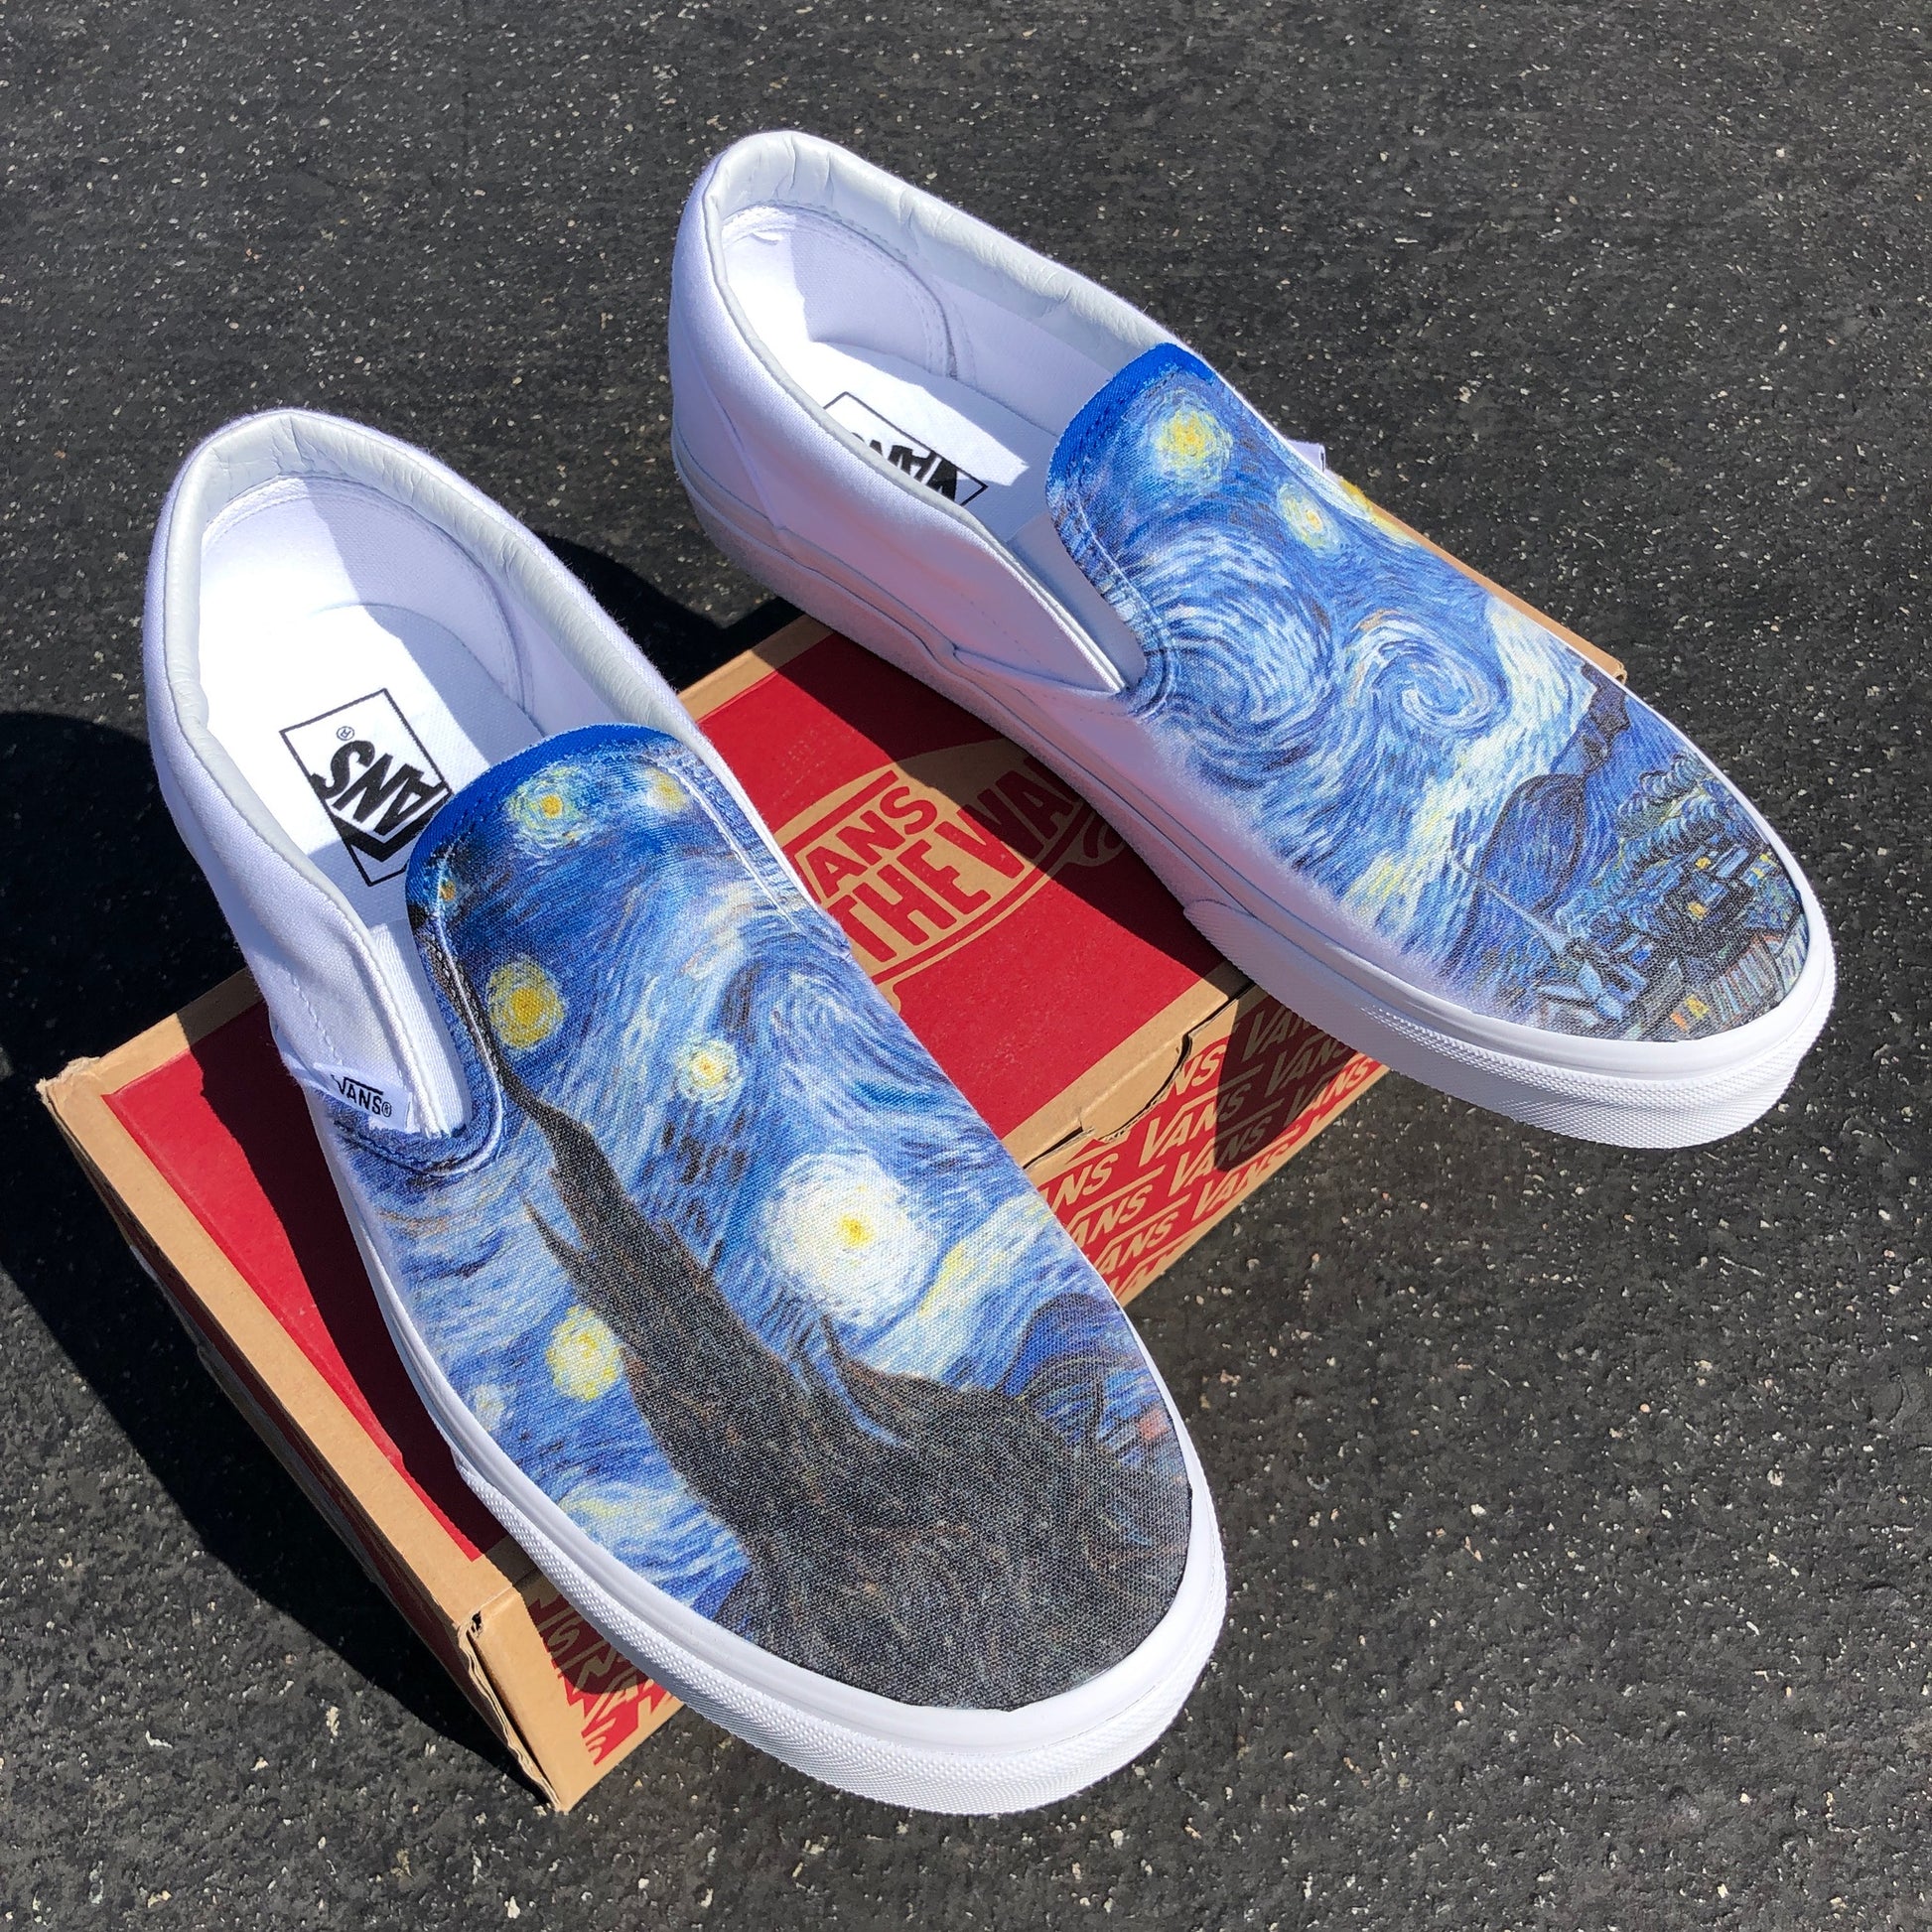 Starry Night - White Slip On Vans